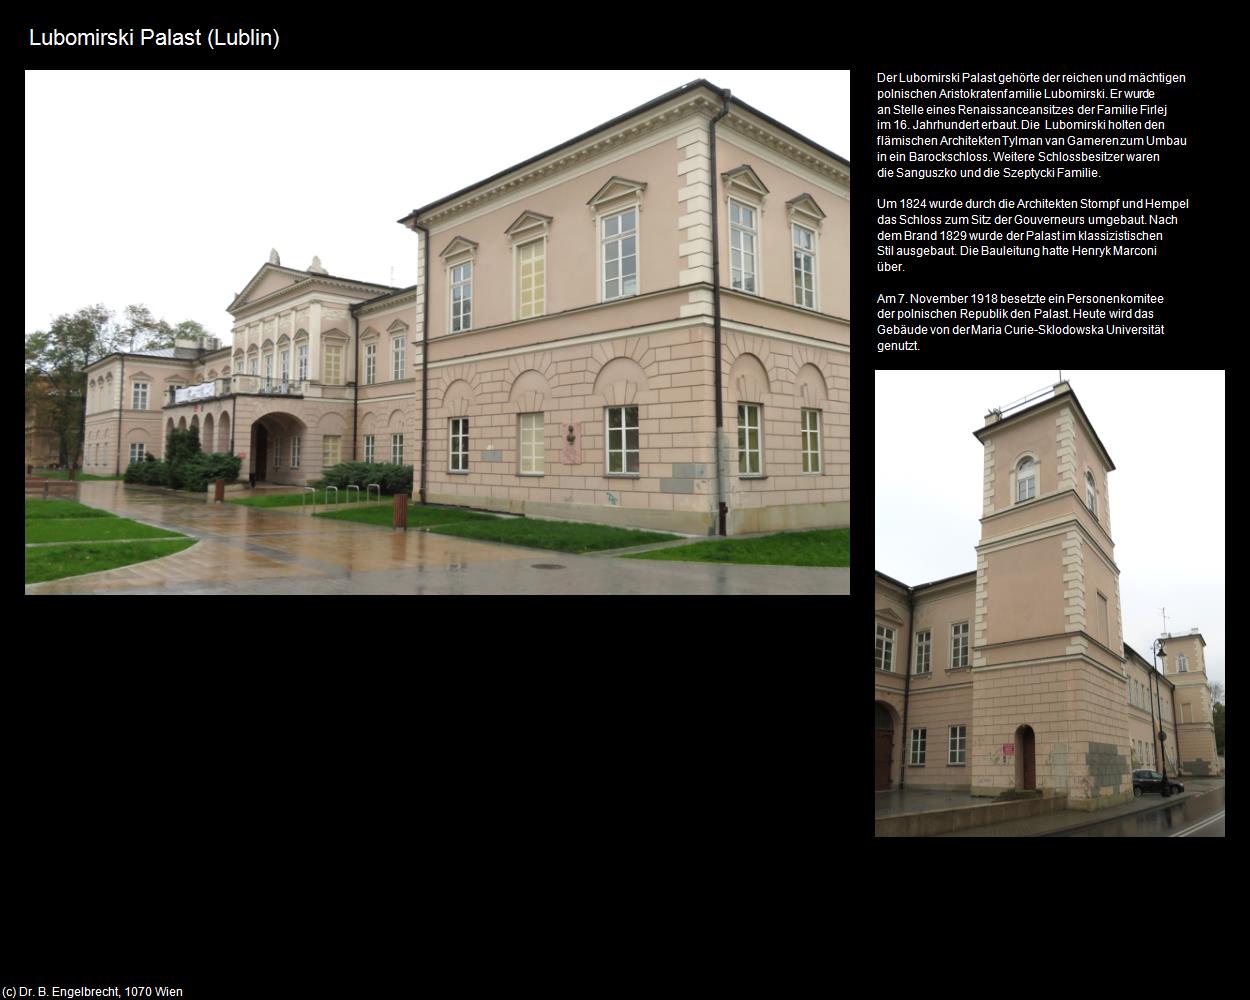 Lubomirski Palast (Lublin) in POLEN-Galizien